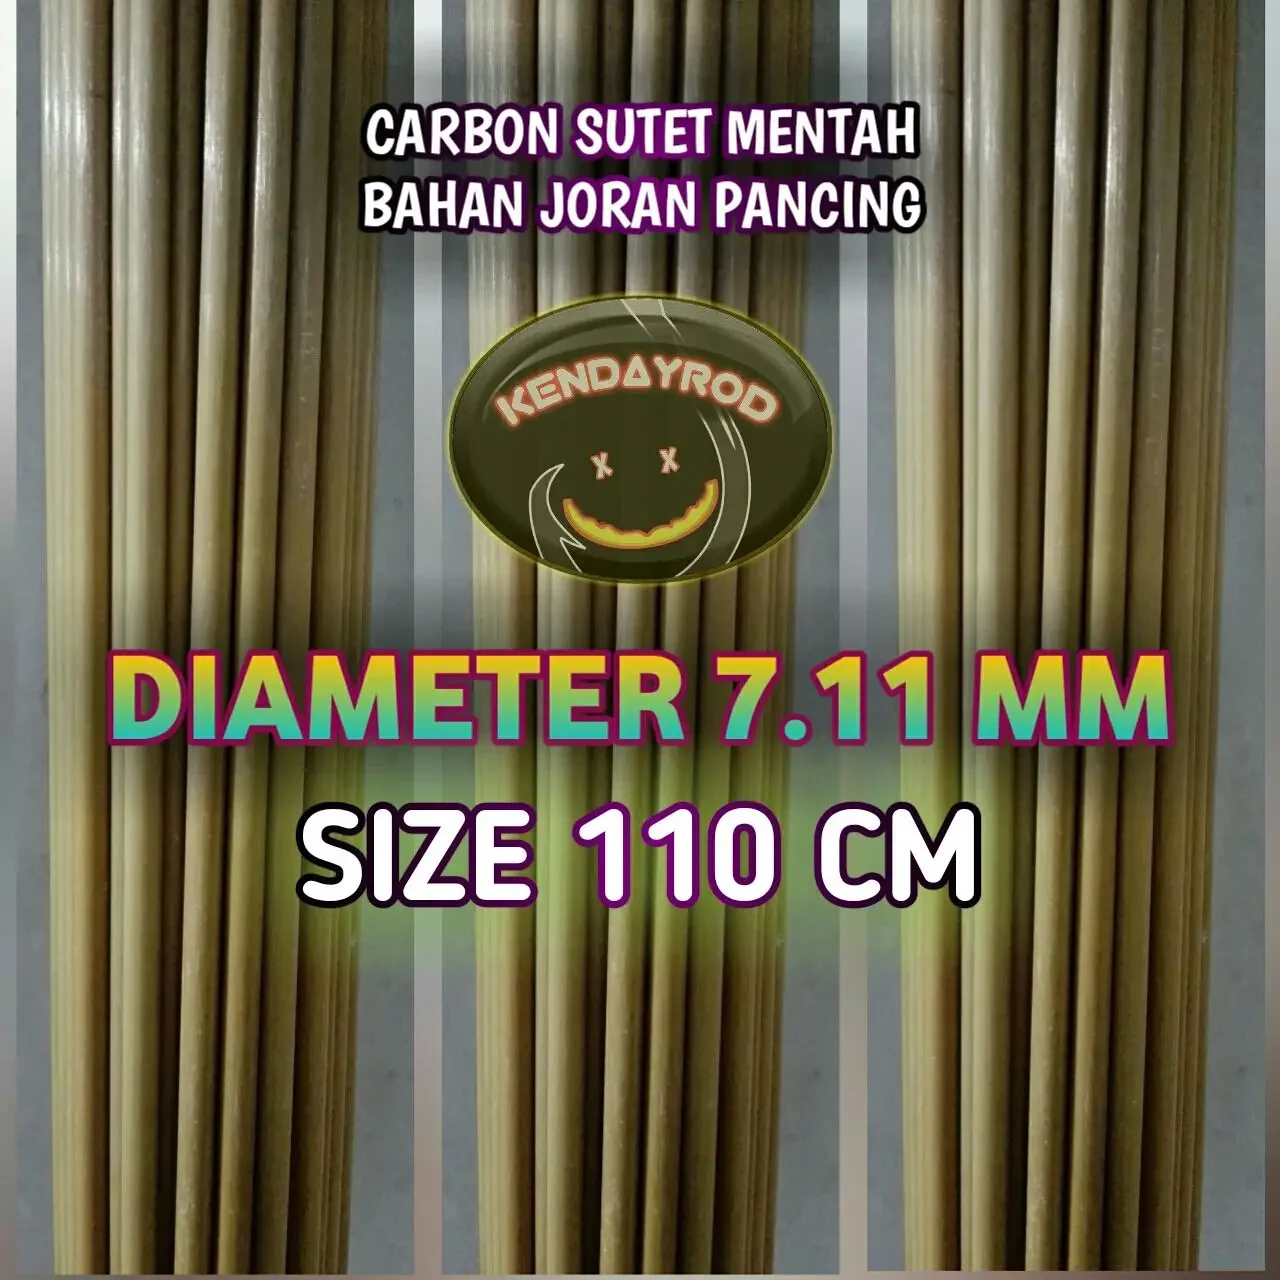 CARBON SUTET JORAN PANCING 7.11 MM x 110 CM